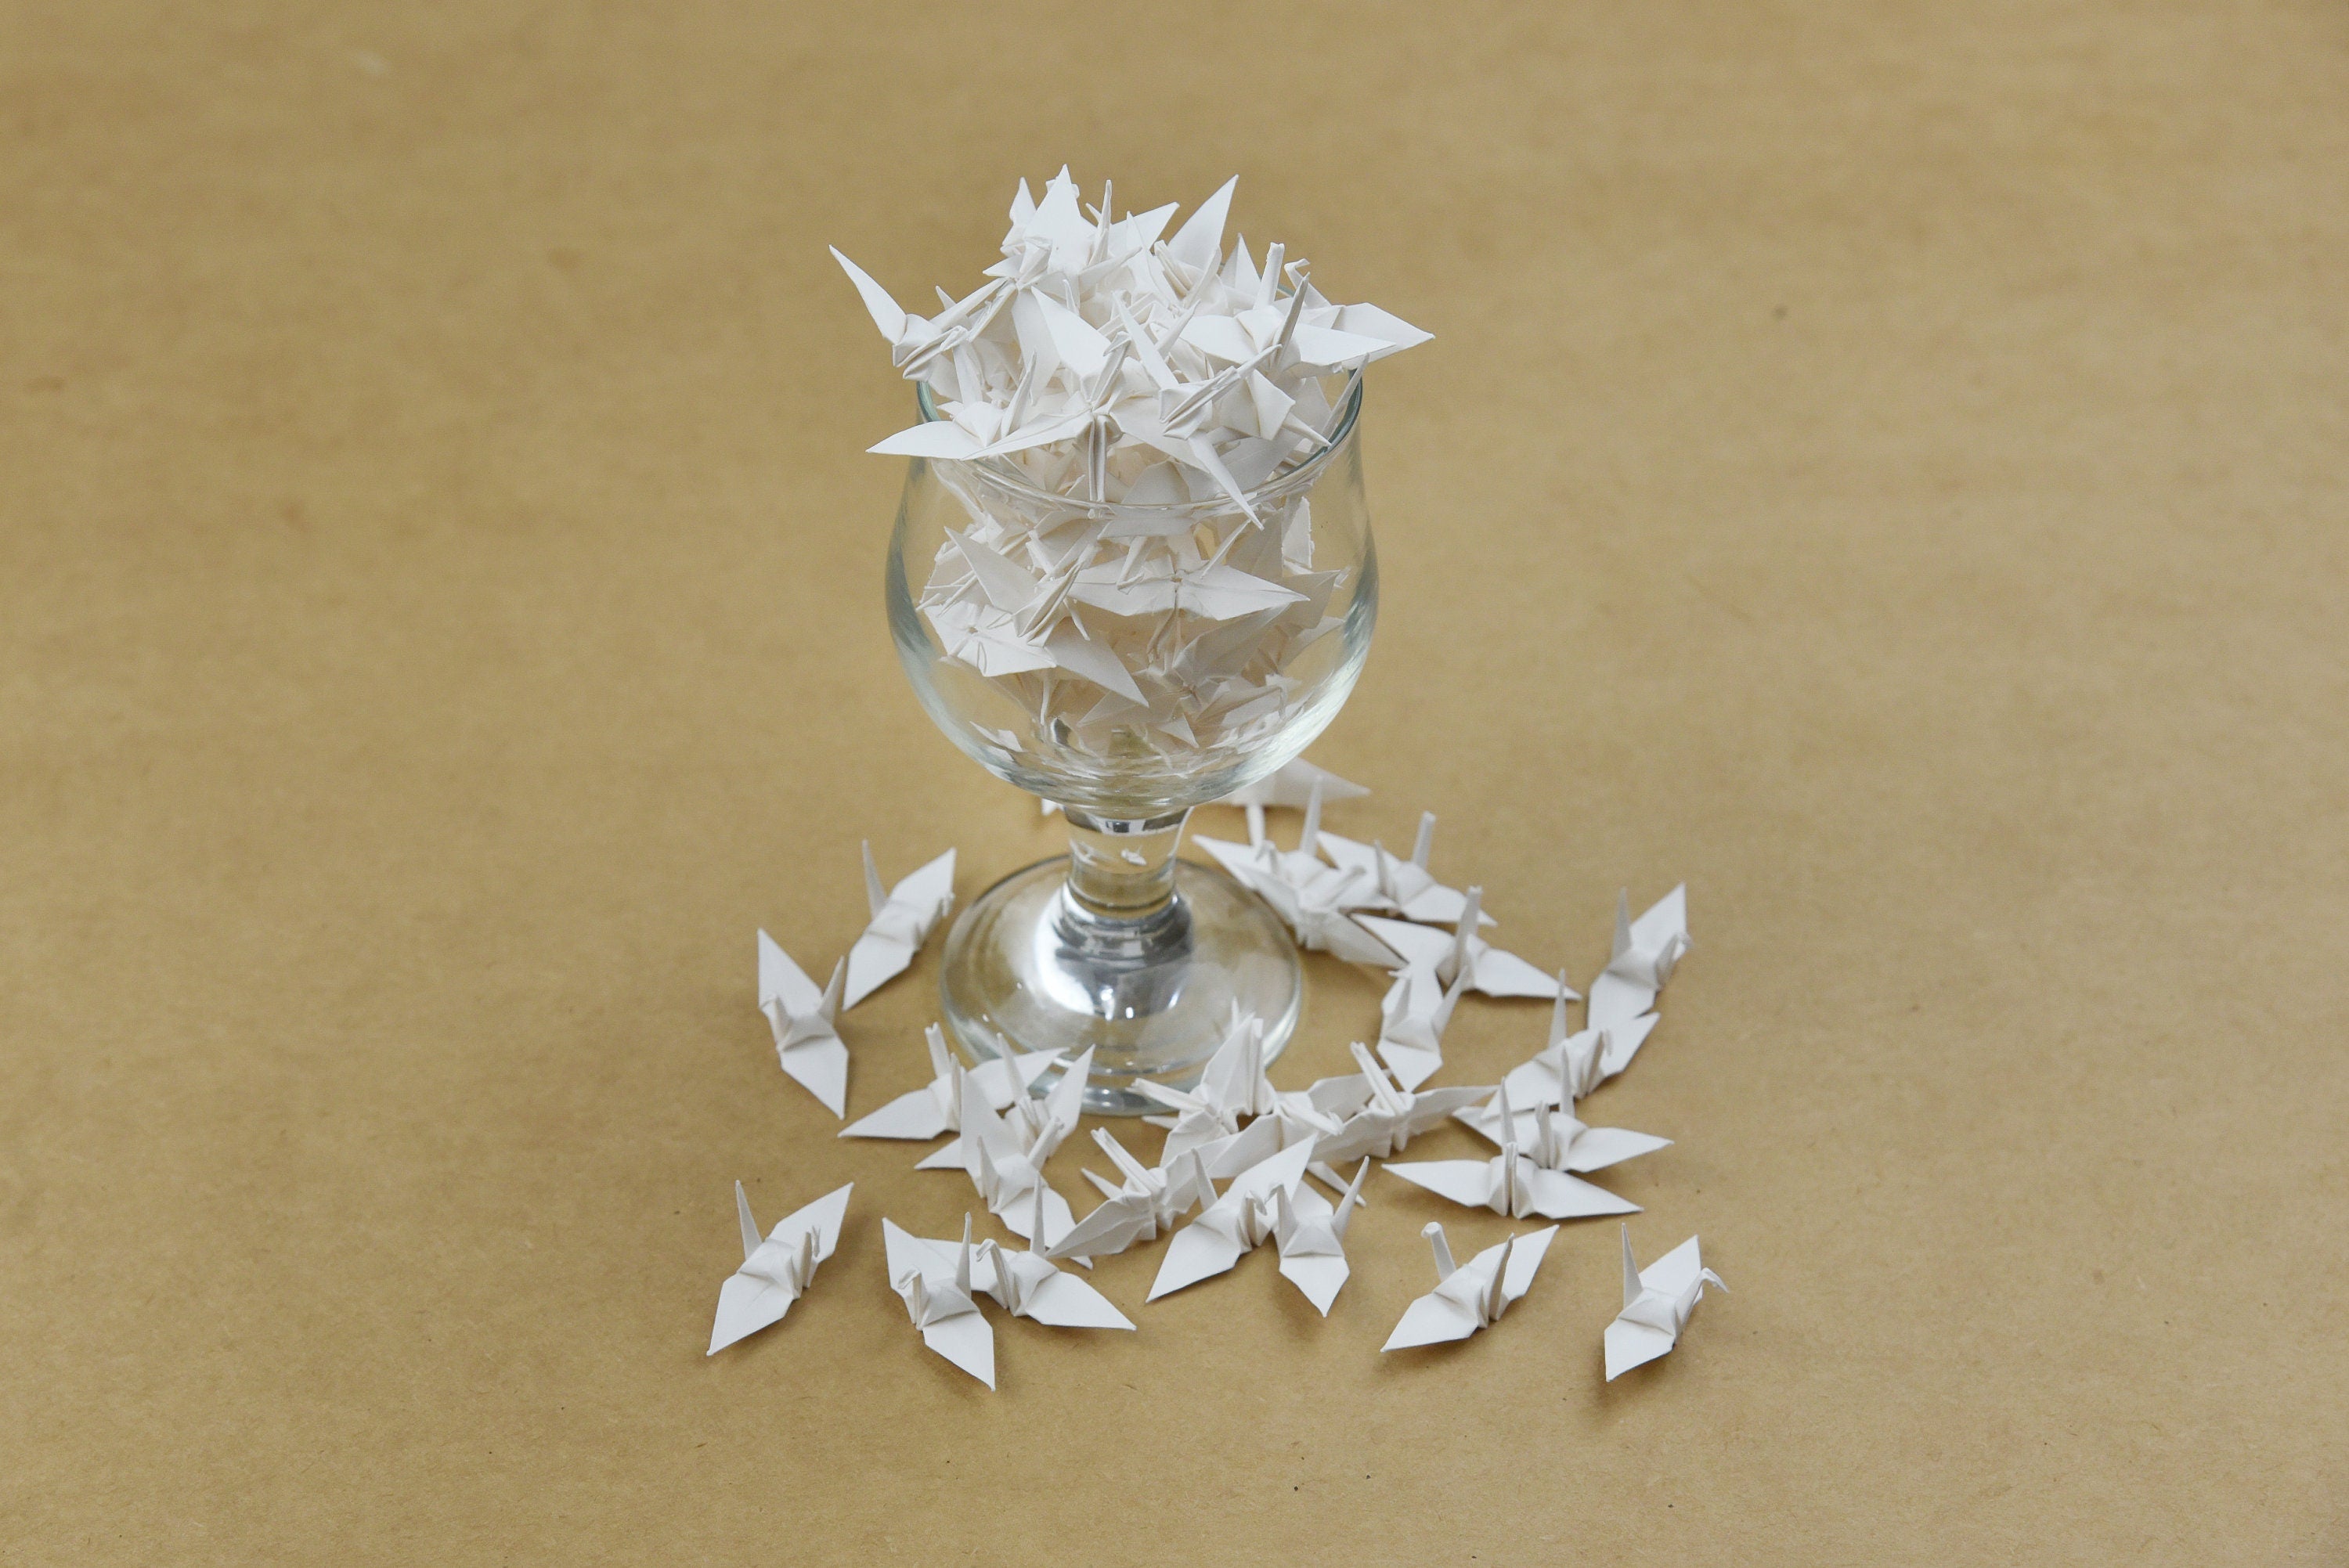 1000 Origami Paper Crane Marfil - Plegado hecho a mano - 1,5 pulgadas - Adorno japonés, Navidad, Decoración de bodas